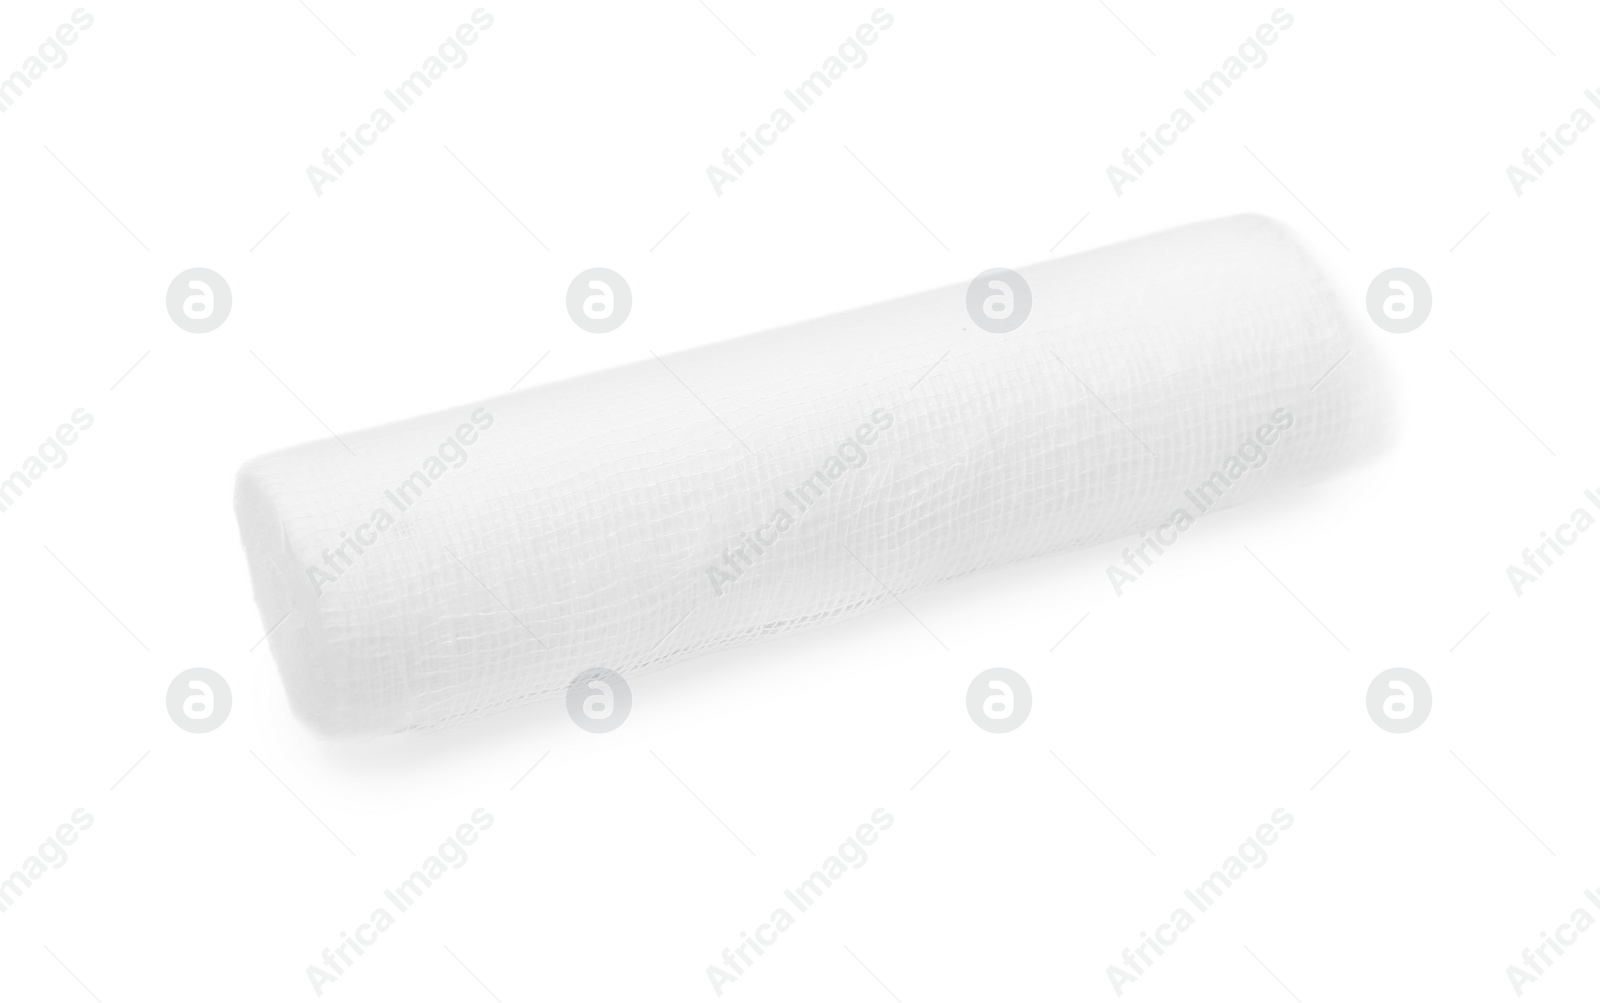 Photo of Medical gauze bandage roll isolated on white